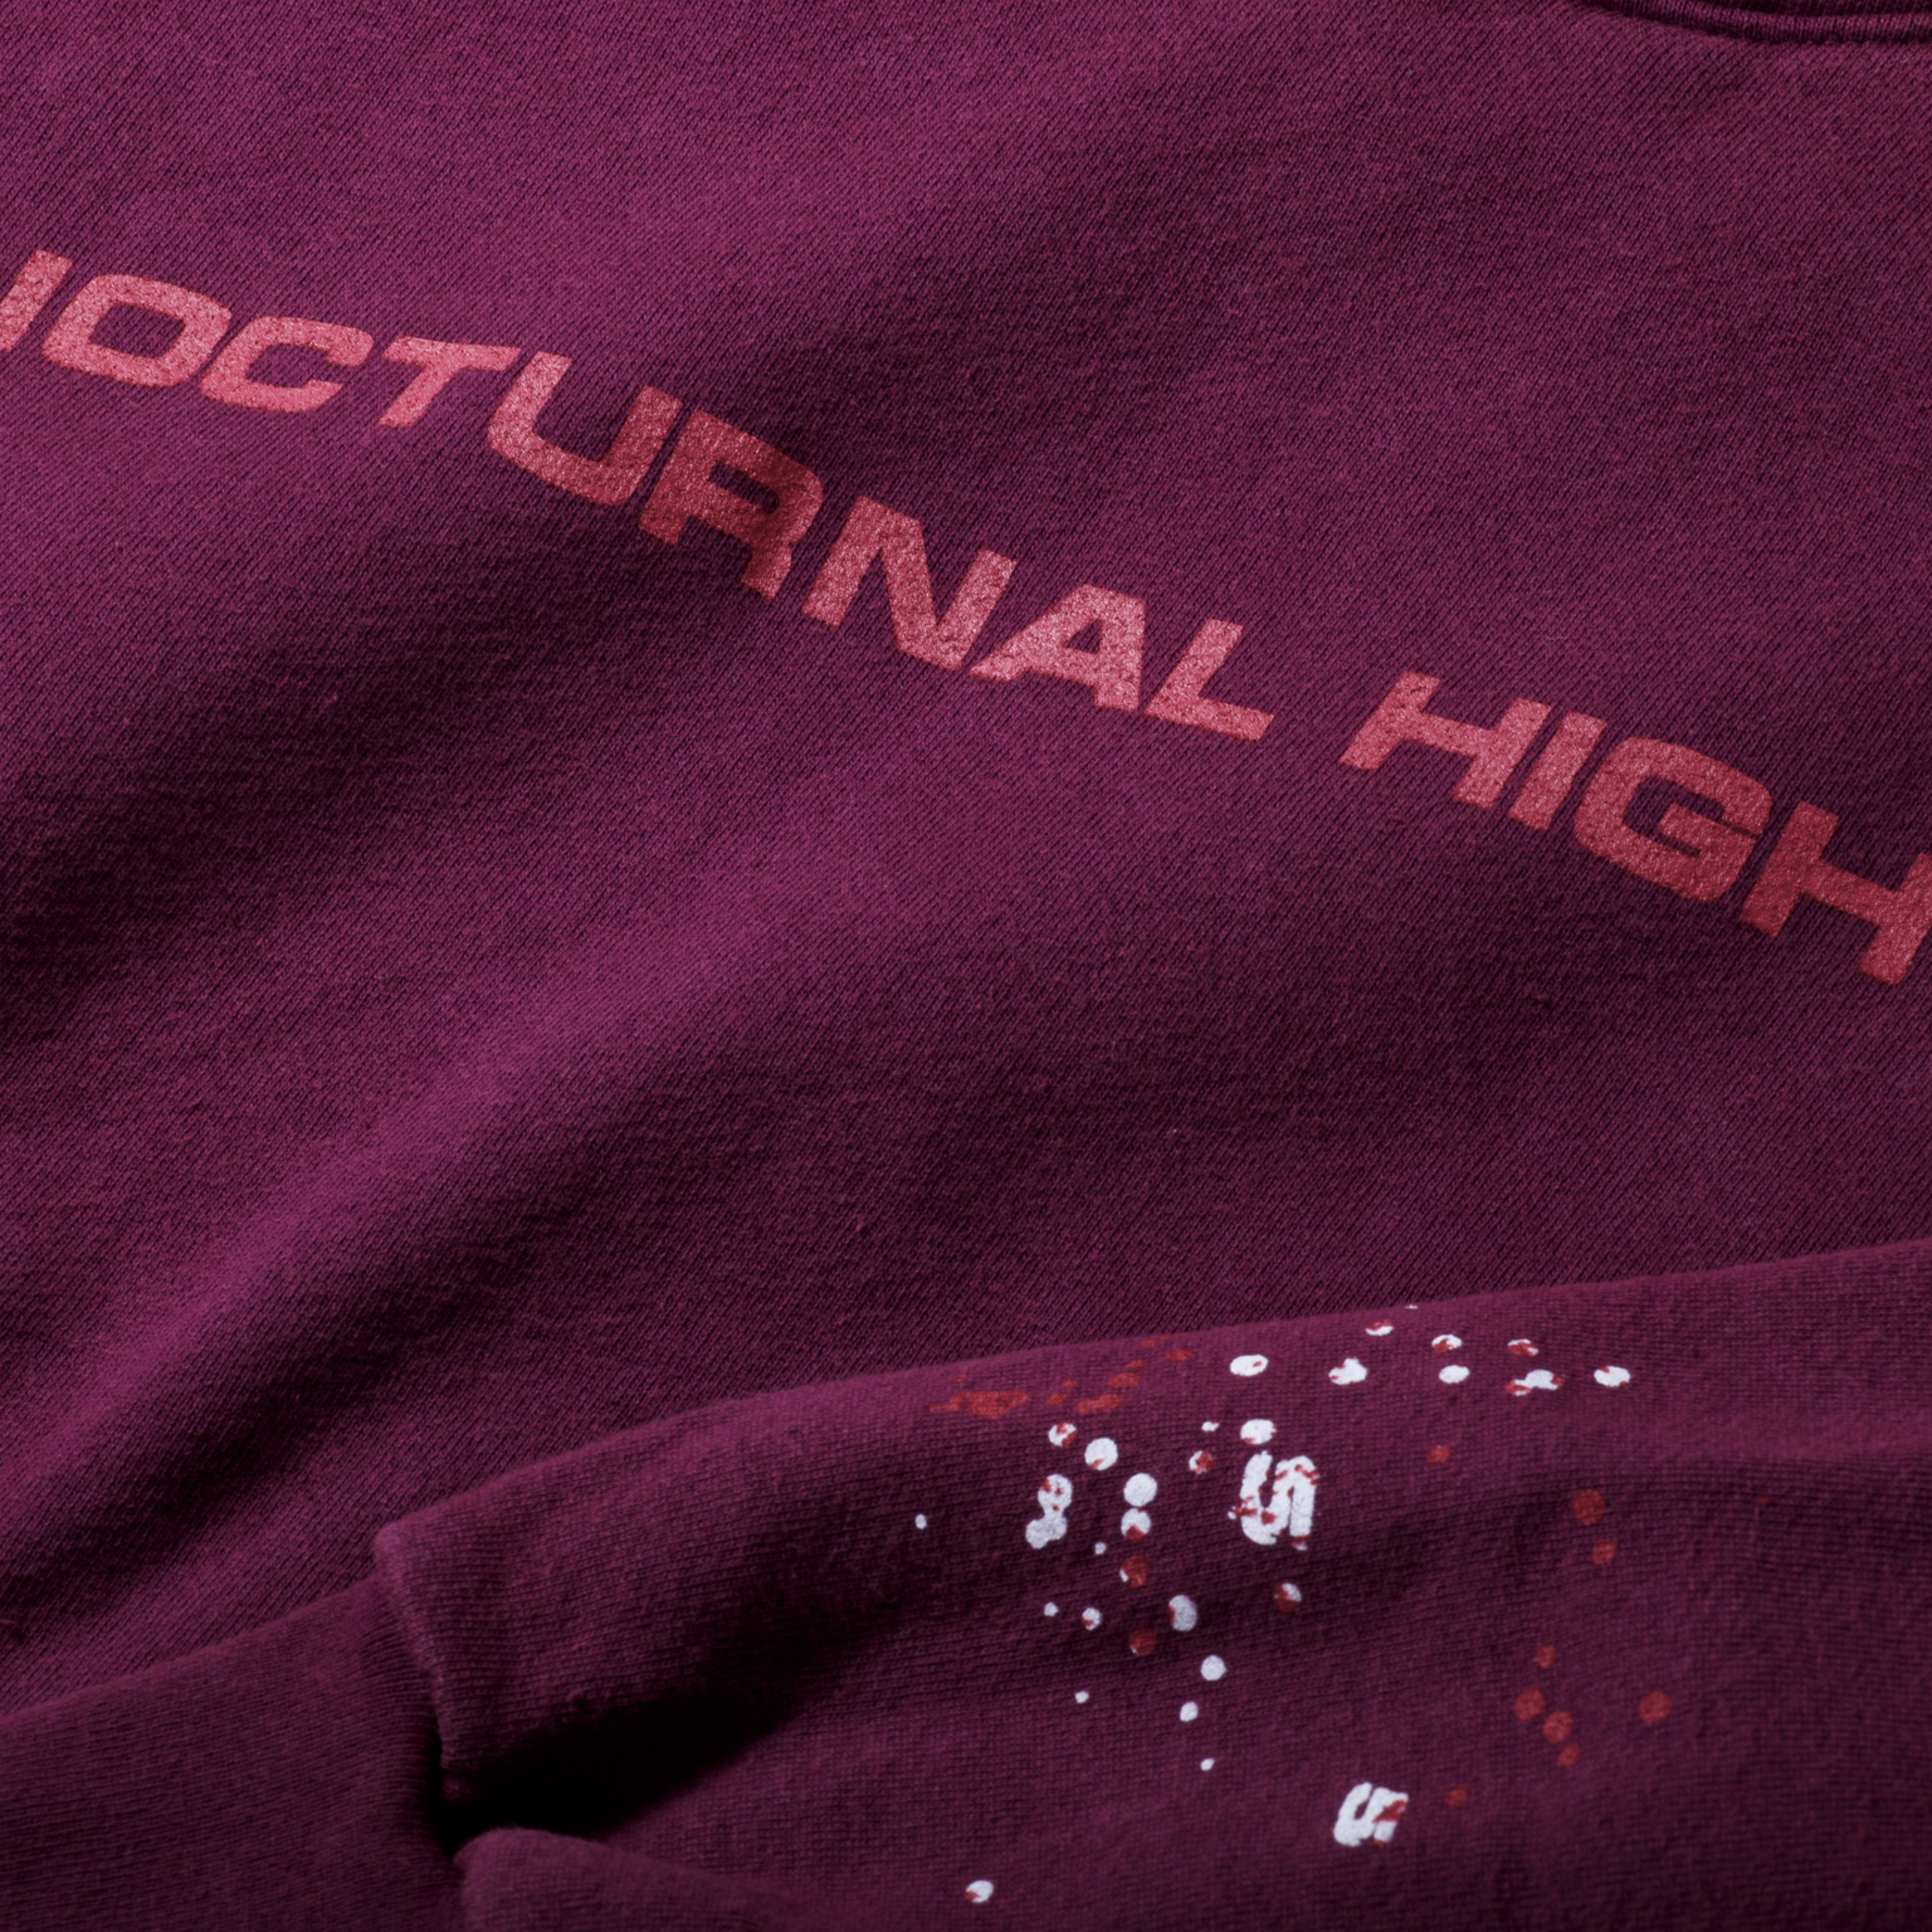 Alternate View 2 of Sp5der Worldwide Nocturnal Highway Sweatshirt Dark Purple